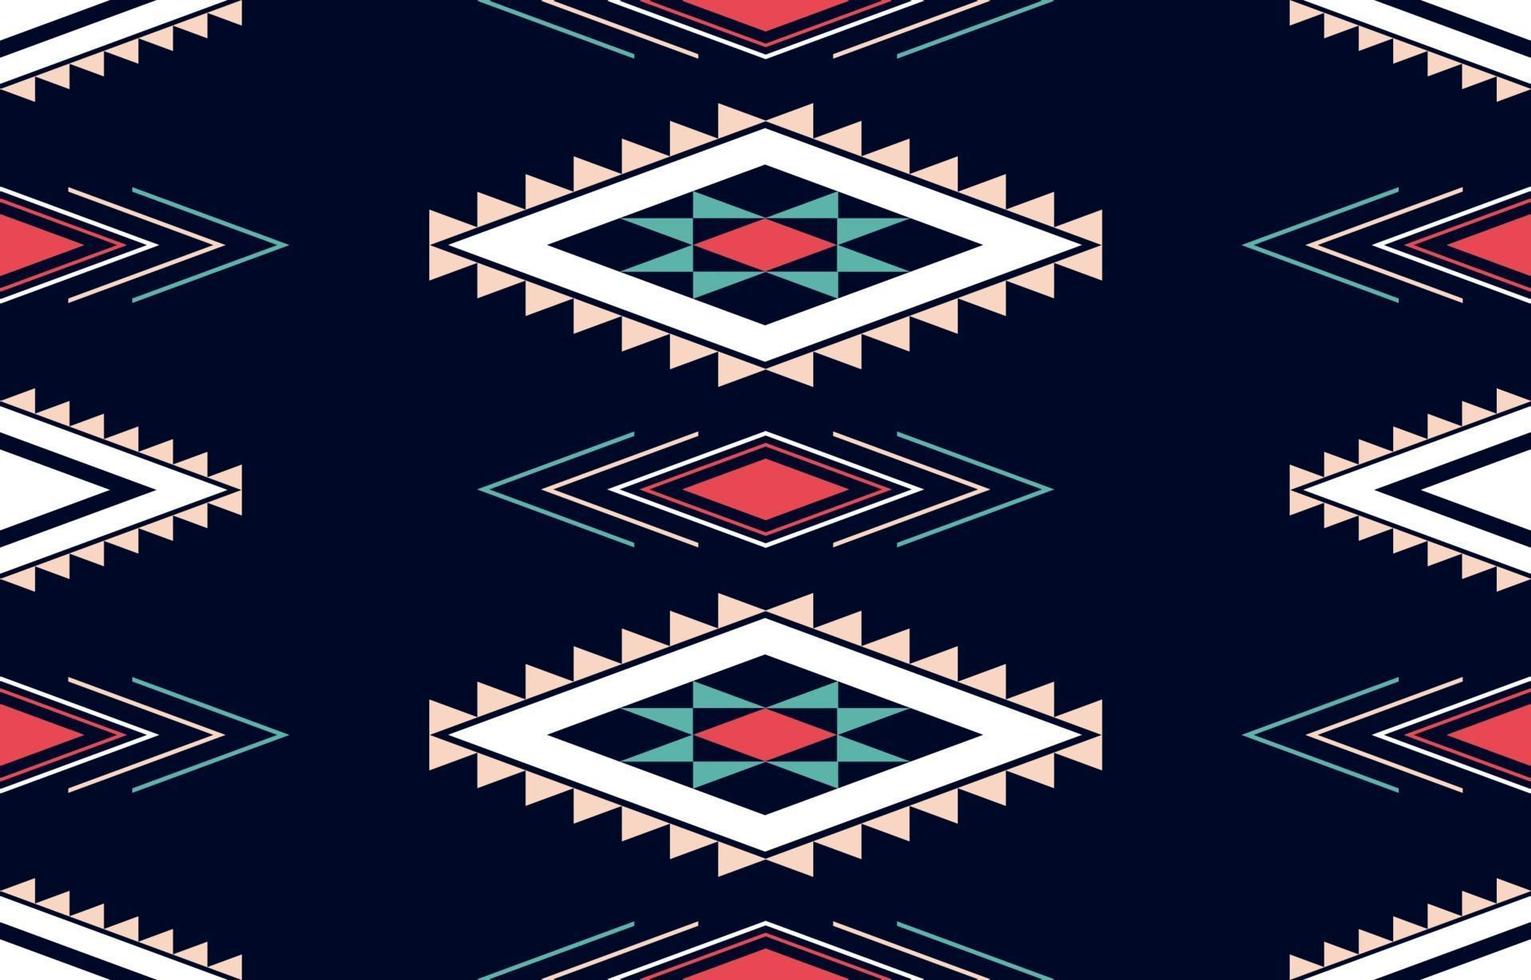 traditionelles Design des geometrischen ethnischen Musters für Hintergrund, Teppich, Tapete, Kleidung, Verpackung, Batik, Stoff, Sarong vektor